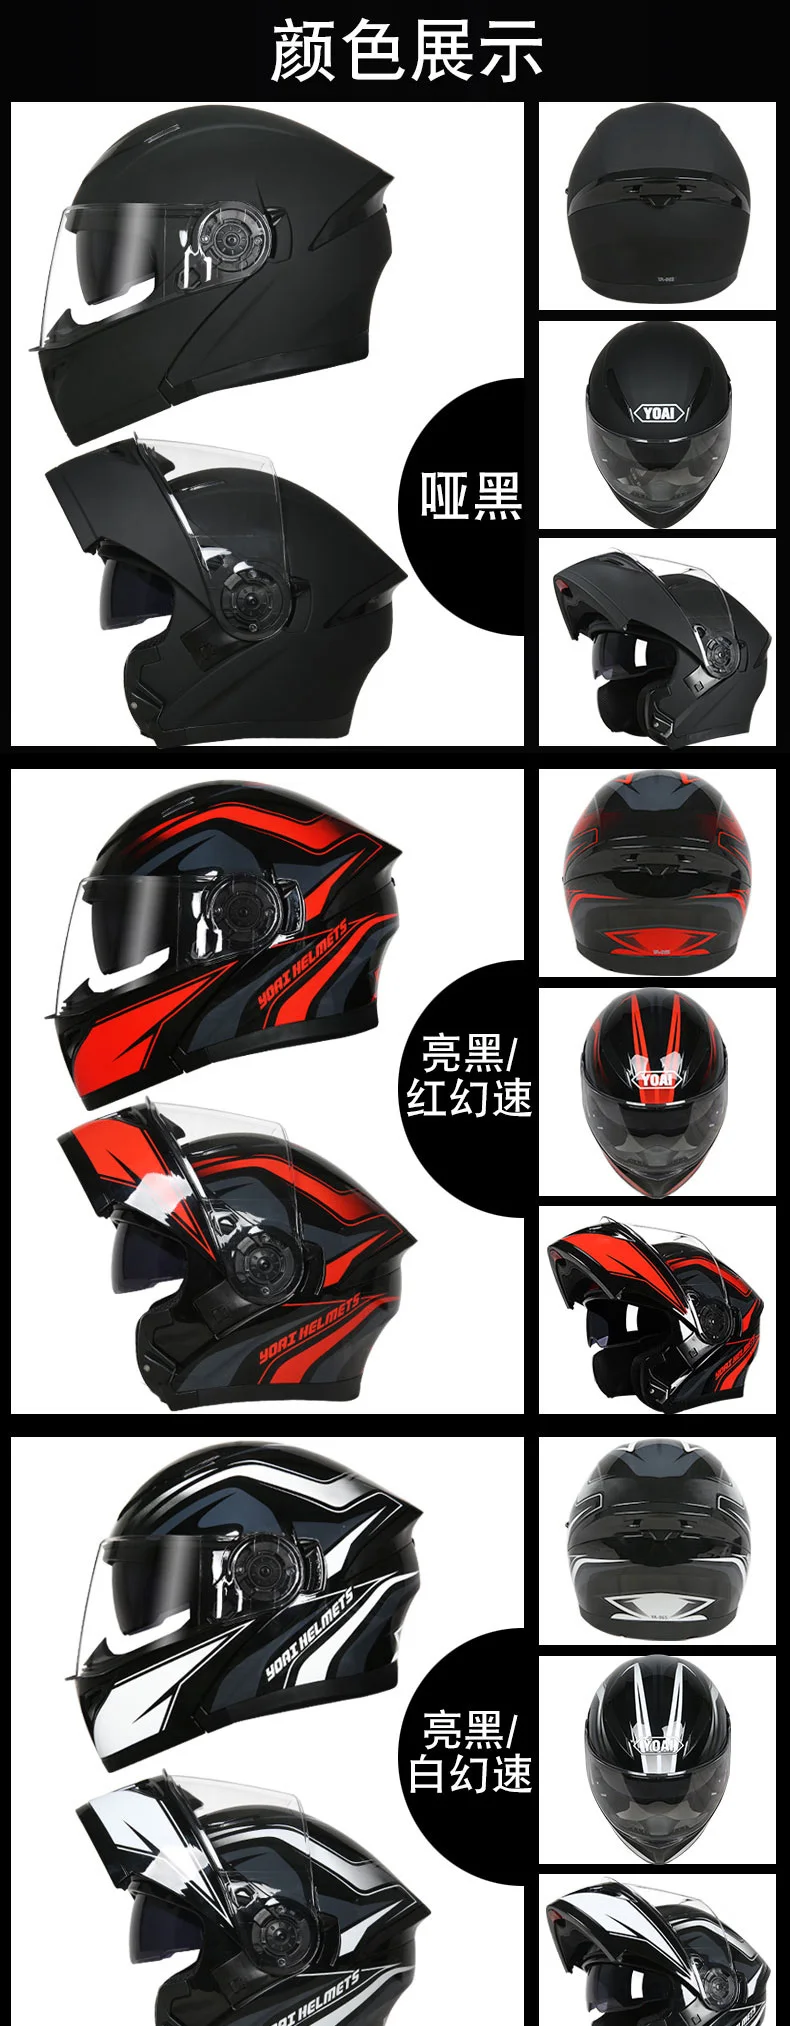 YOAI moto rcycle шлем двойной vsior анфас мото шлемы Filp Up Casco Racing Capacete с внутренним солнцезащитным козырьком